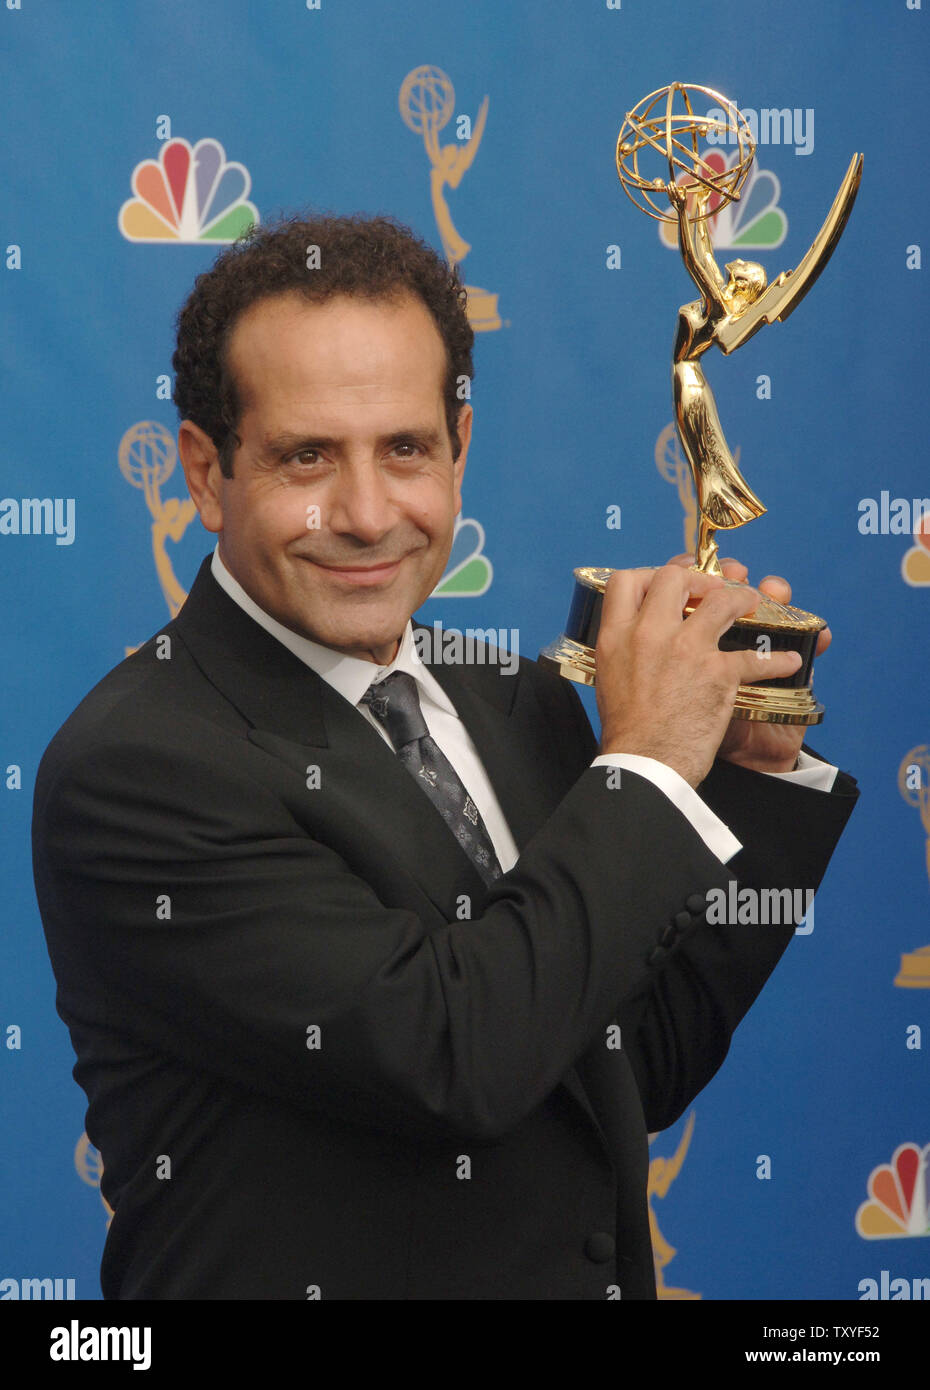 Tony Shalhoub tiene il suo Emmy award per il ruolo di primo attore in una serie di commedia per 'monk' alla 58th annuale di Primetime Emmy awards presso lo Shrine Auditorium di Los Angeles, la California il 27 agosto 2006. (UPI foto/Jim Ruymen) Foto Stock